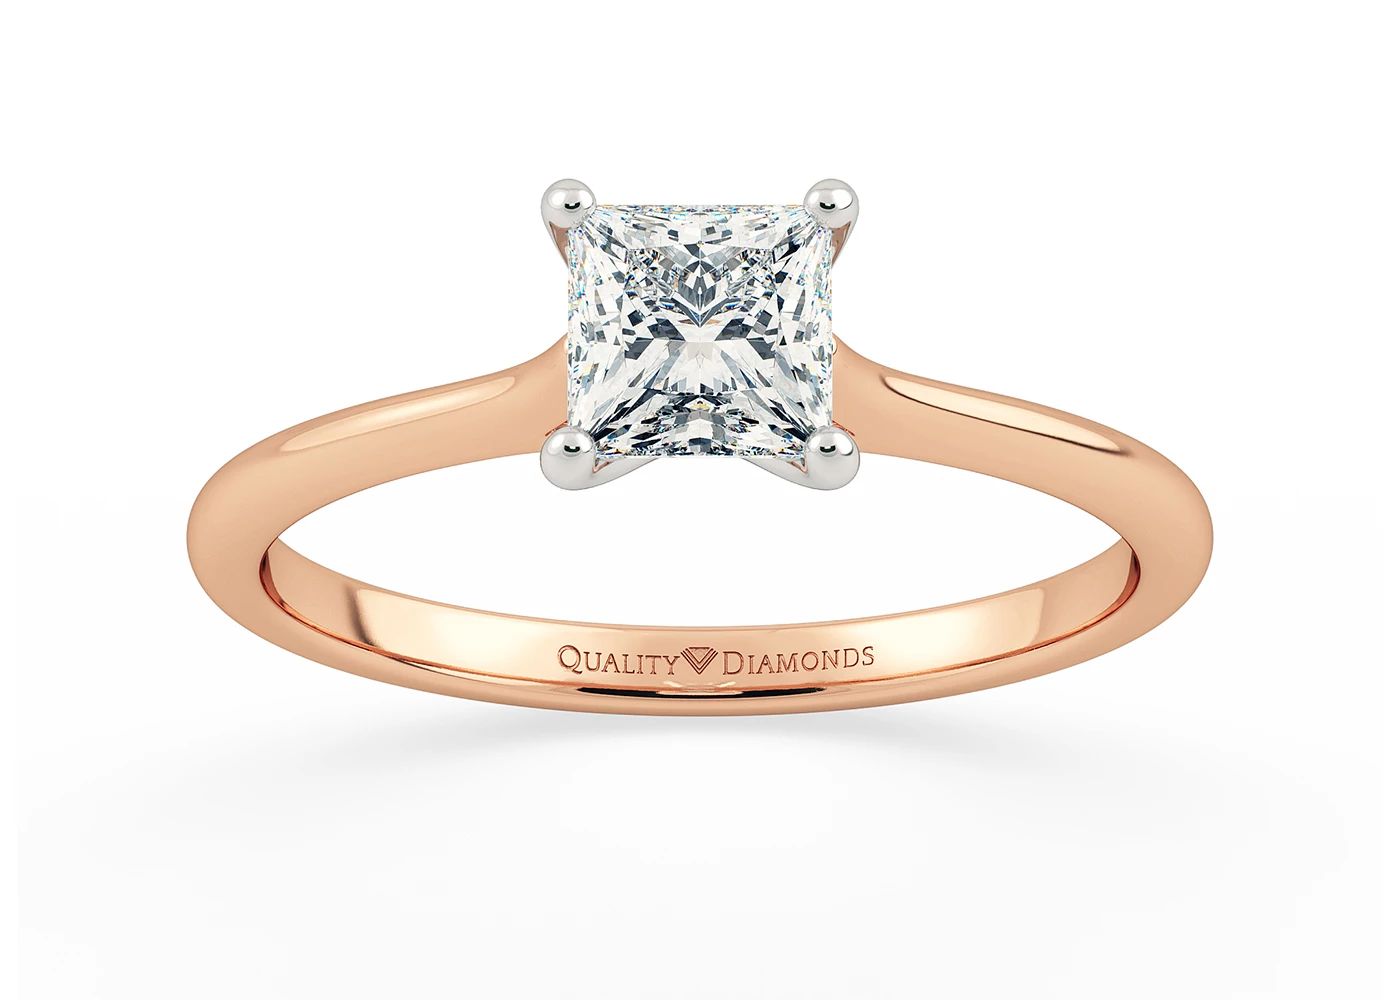 Princess Adamas Diamond Ring in 9K Rose Gold